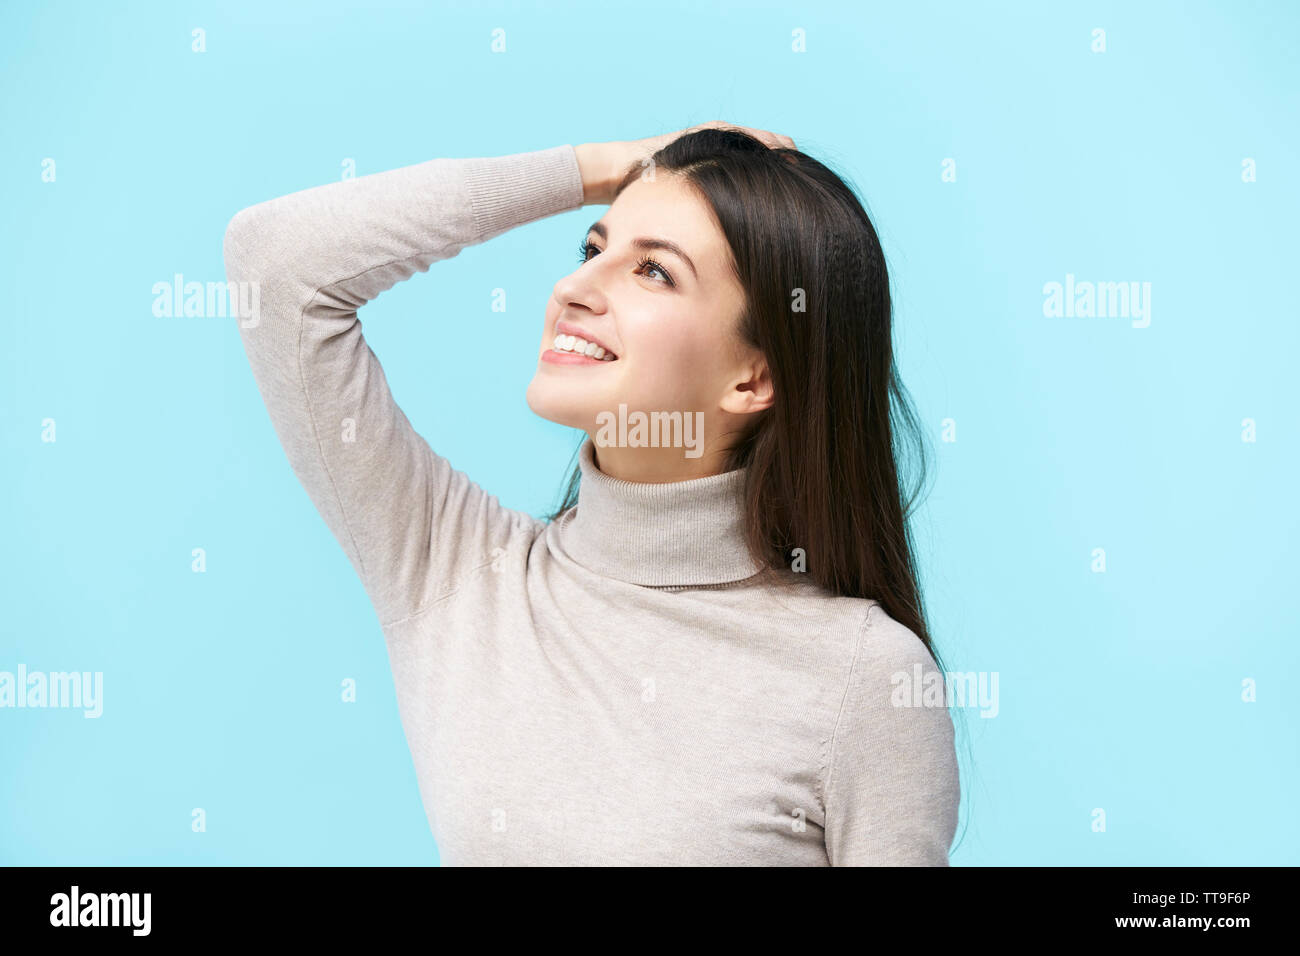 Bellissima giovane donna caucasica guardando verso l'alto e sorridente, mano sulla fronte, isolato su sfondo blu Foto Stock